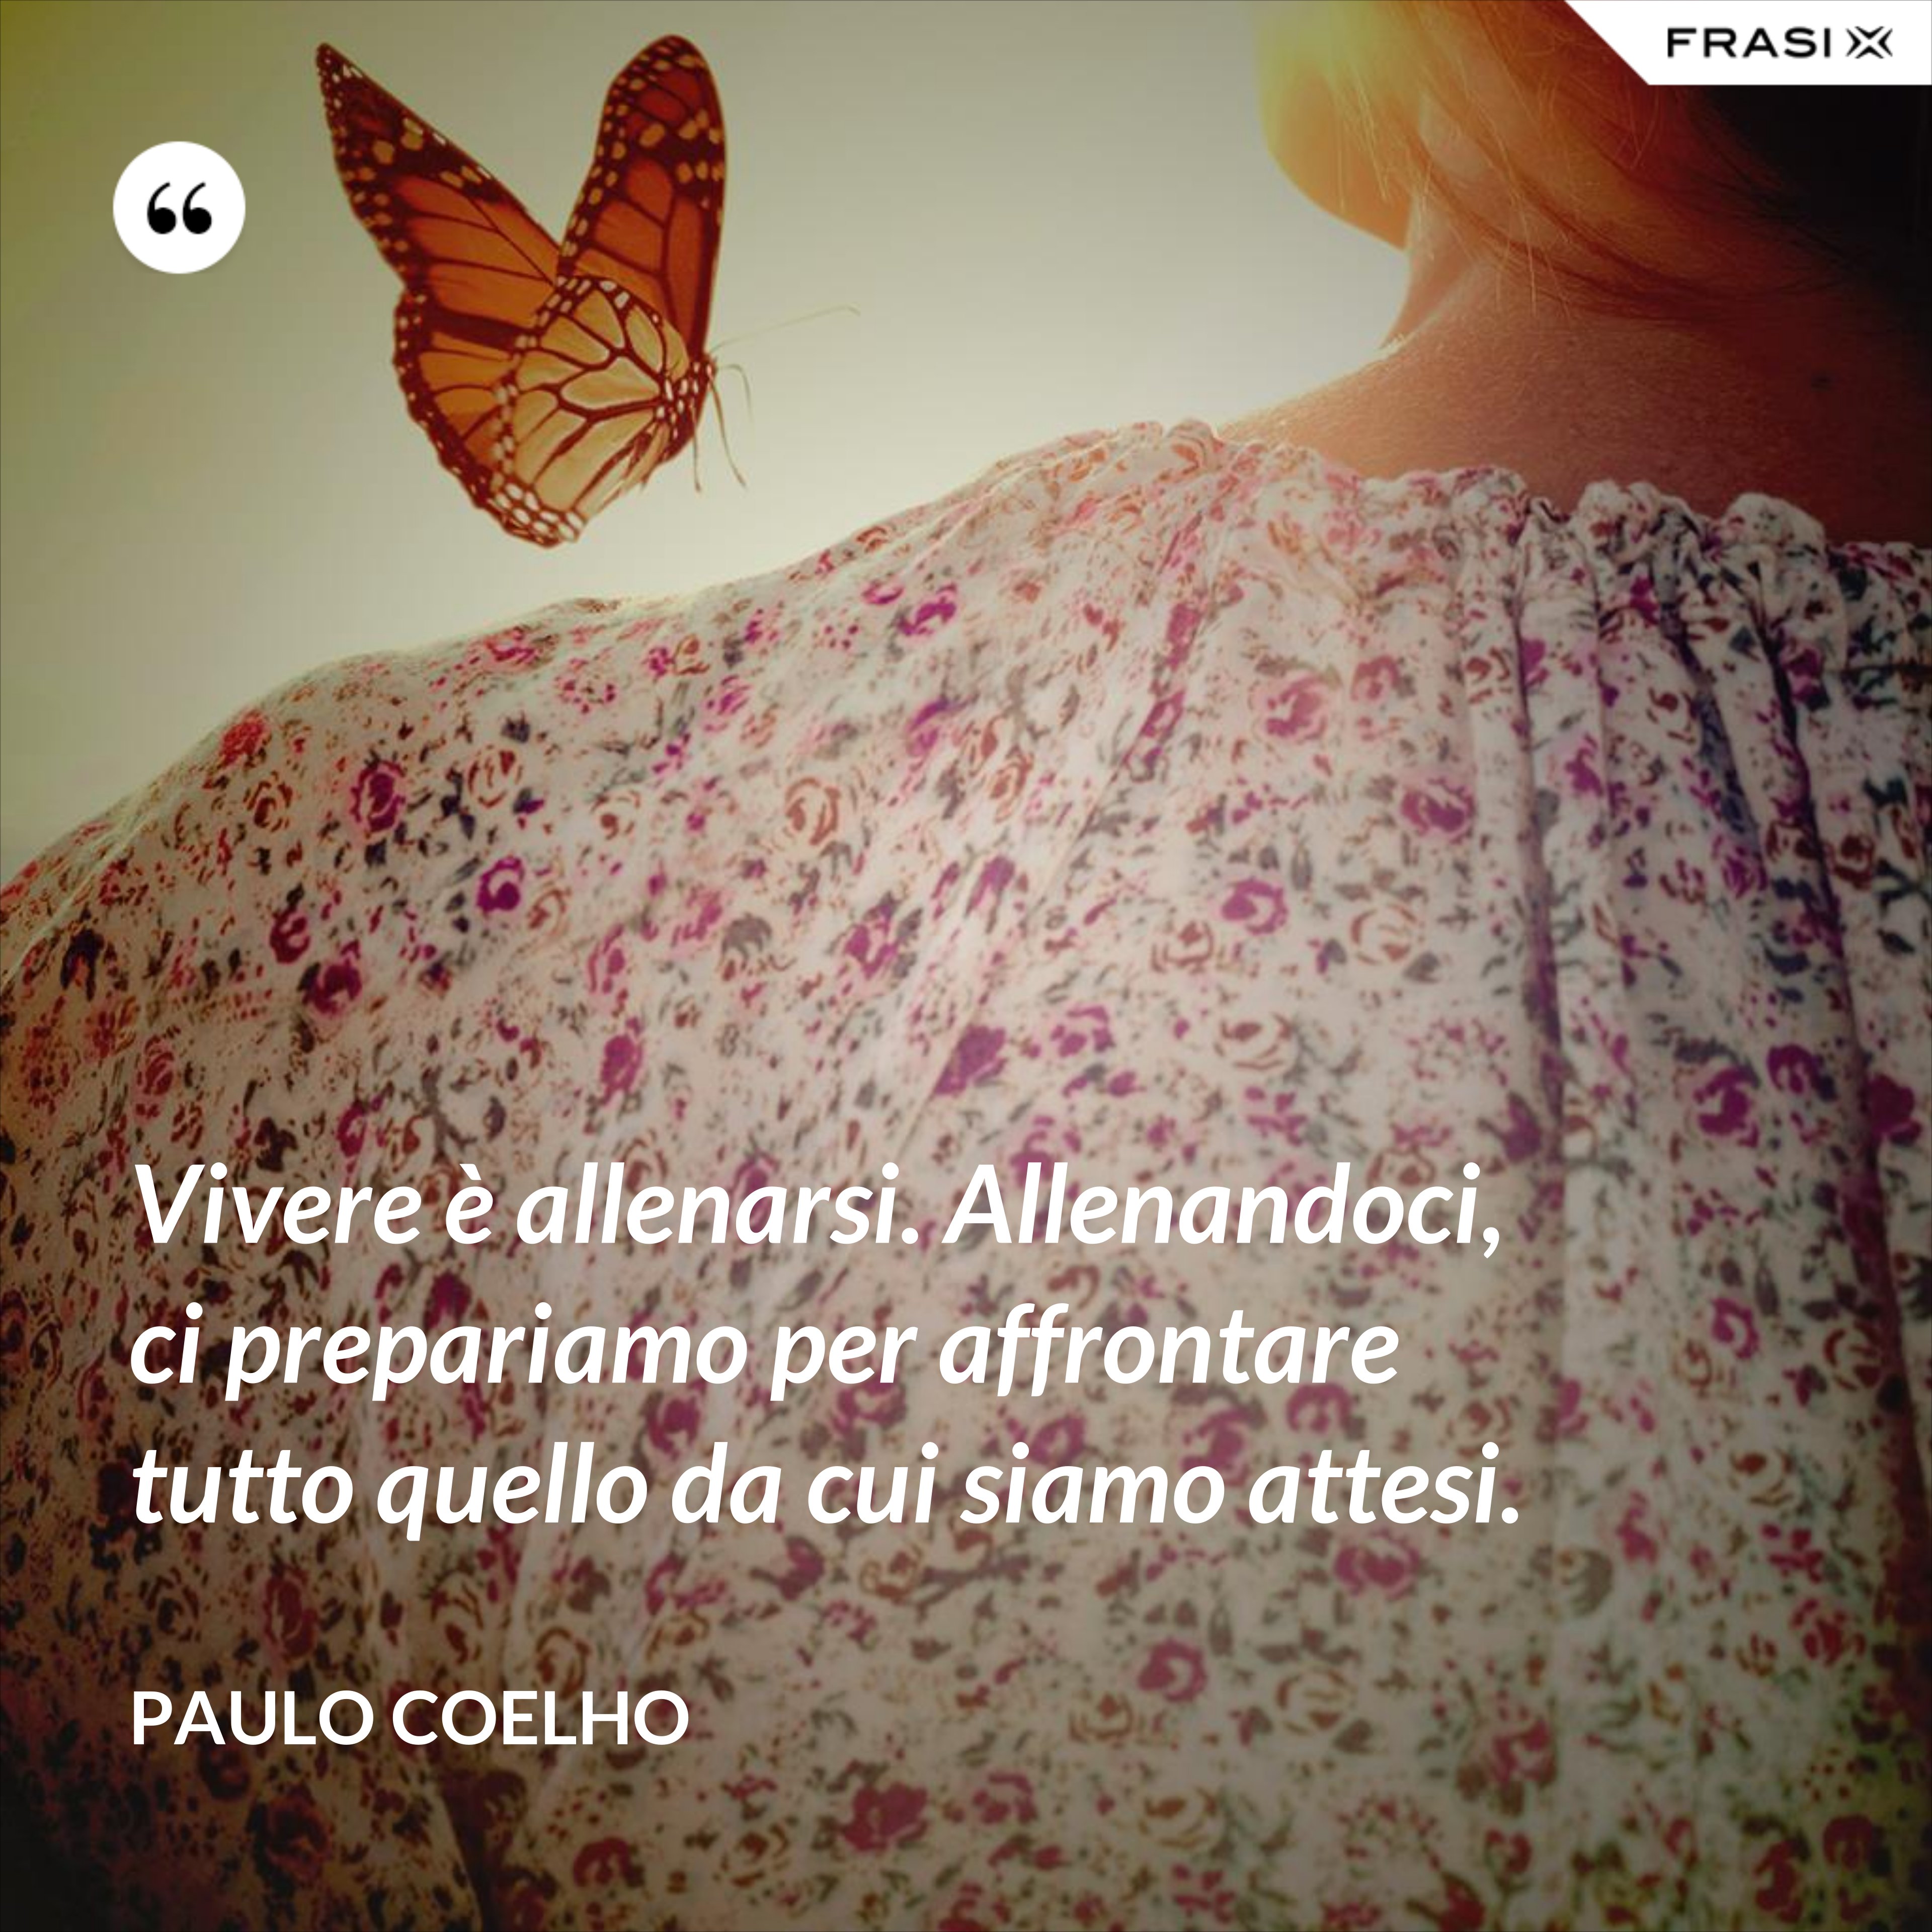 Vivere è allenarsi. Allenandoci, ci prepariamo per affrontare tutto quello da cui siamo attesi. - Paulo Coelho